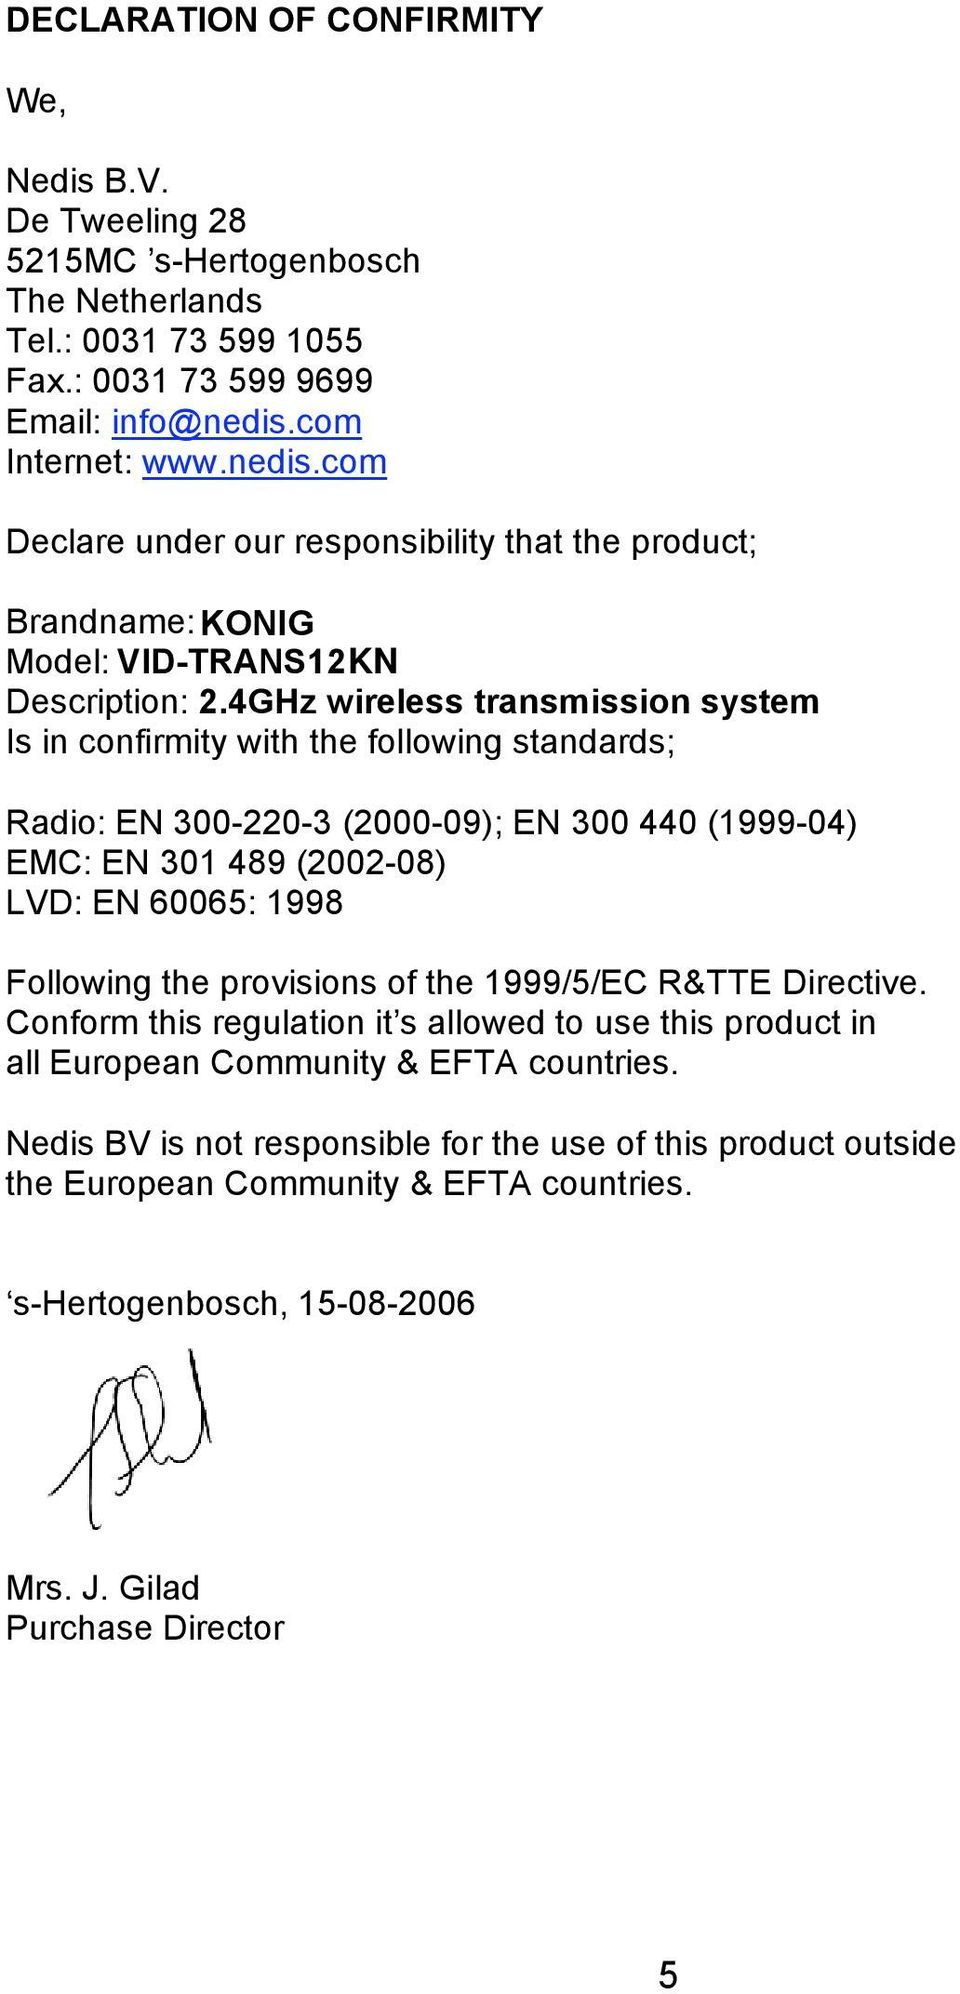 4GHz wireless transmission system Is in confirmity with the following standards; Radio: EN 300-220-3 (2000-09); EN 300 440 (1999-04) EMC: EN 301 489 (2002-08) LVD: EN 60065: 1998 Following the